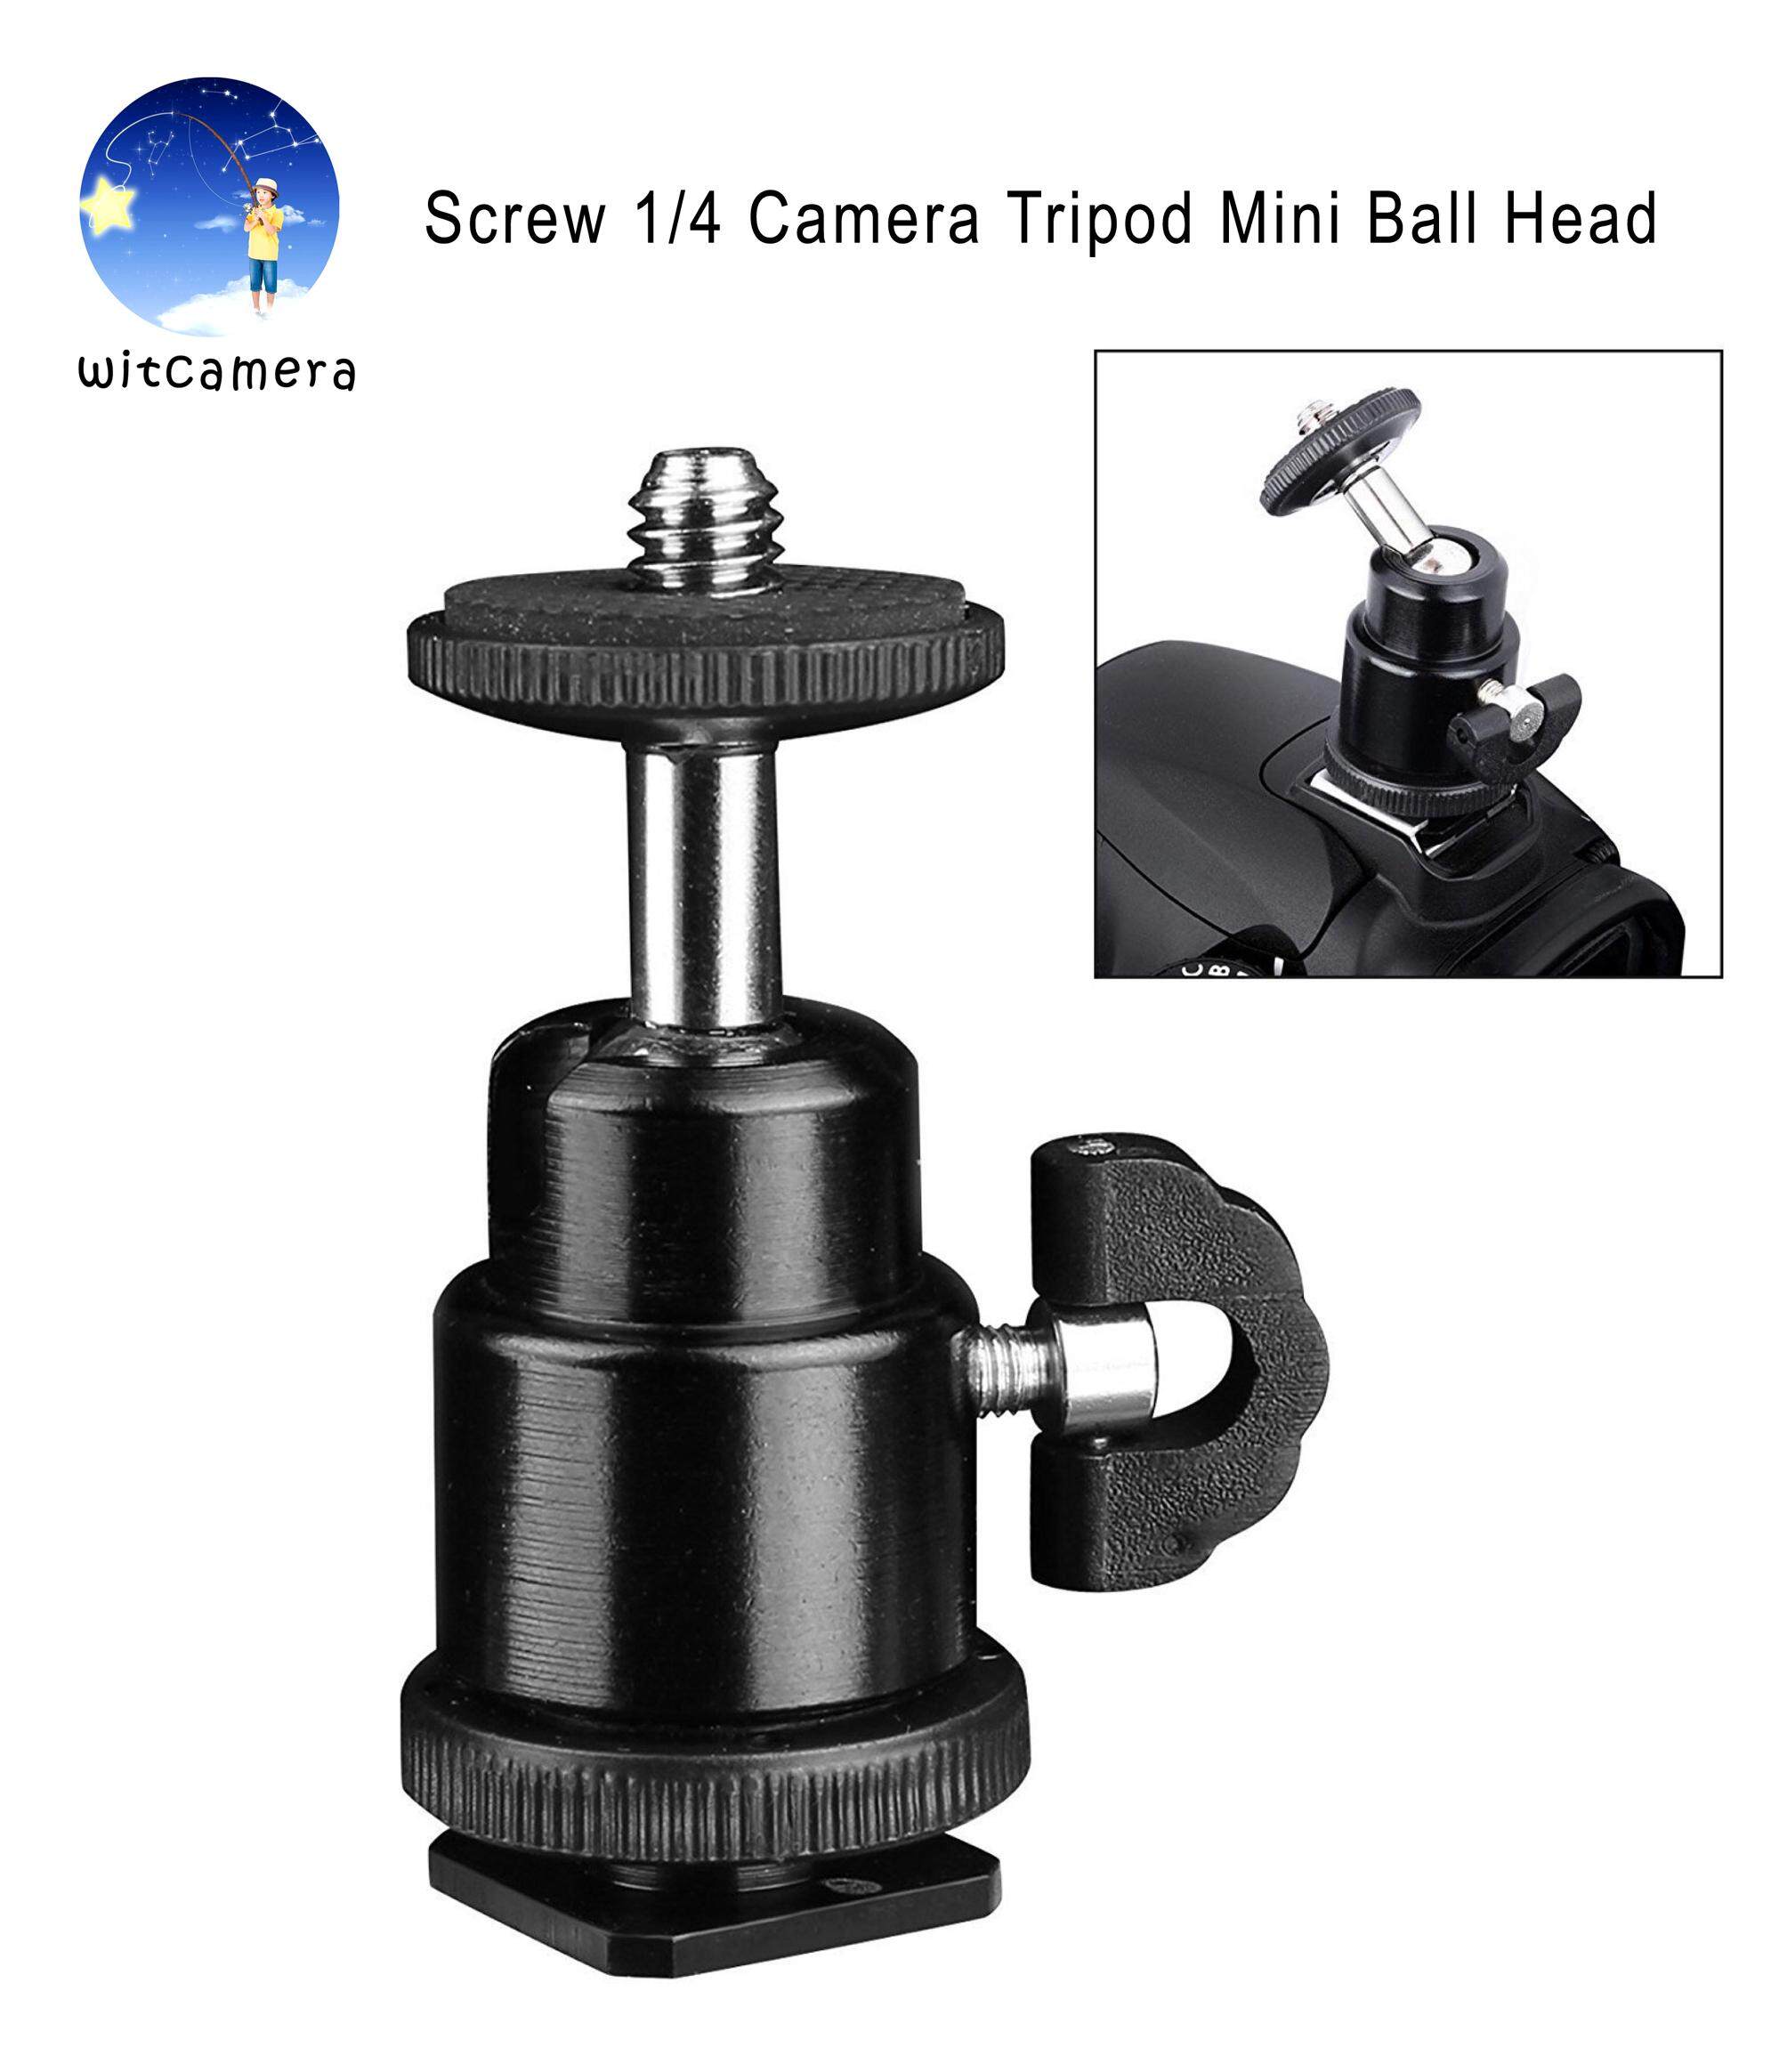 Screw 1/4 inch Camera Tripod Mini Ball Head Hot Shoe Adapter Accessory for Digital Camera / สกรู 1/4 นิ้วกล้องขาตั้งกล้องหัวบอลมินิรองเท้าฮอตอะแดปเตอร์อุปกรณ์เสริมสำหรับกล้องดิจิตอล